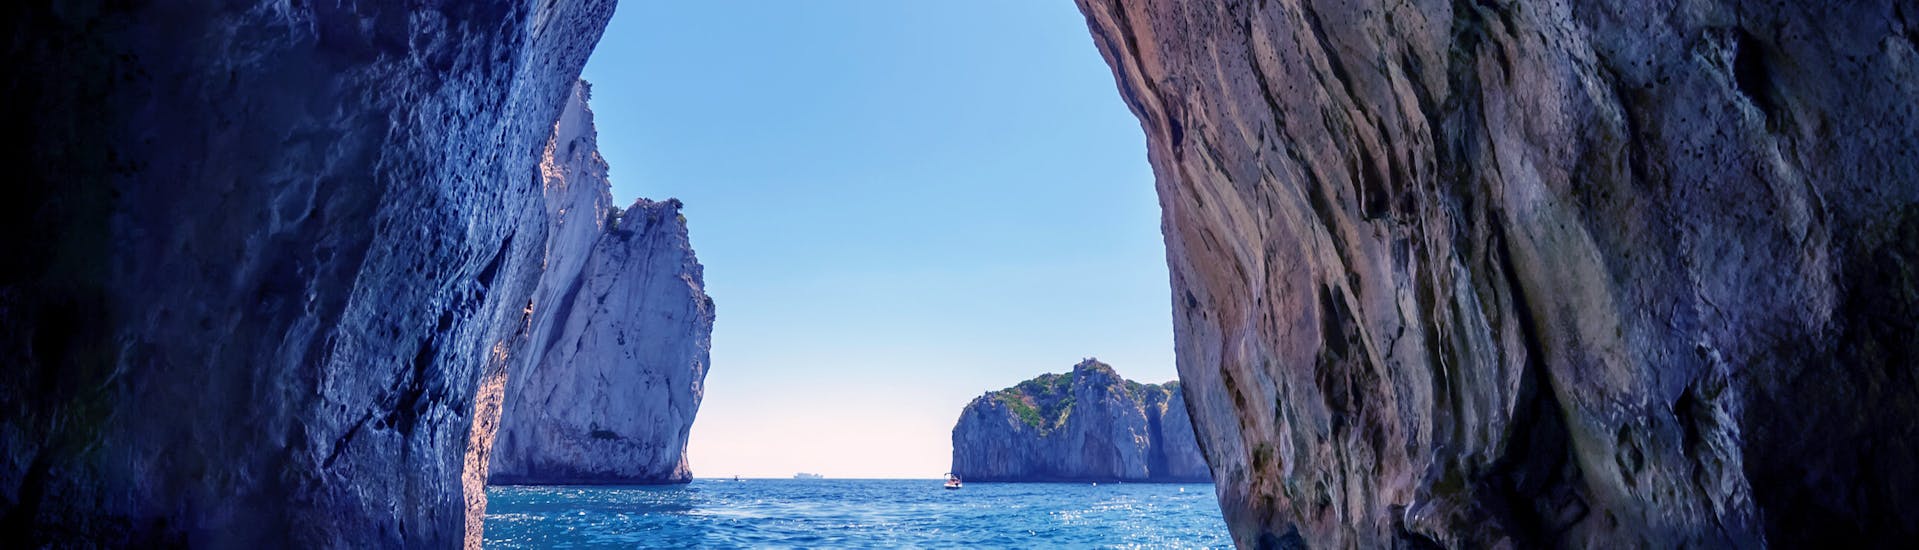 Uitzicht op de Blauwe Grot tijdens de Boottocht naar de Blauwe Grot en Capri met snorkelen met Giuliani Charter Sorrento.